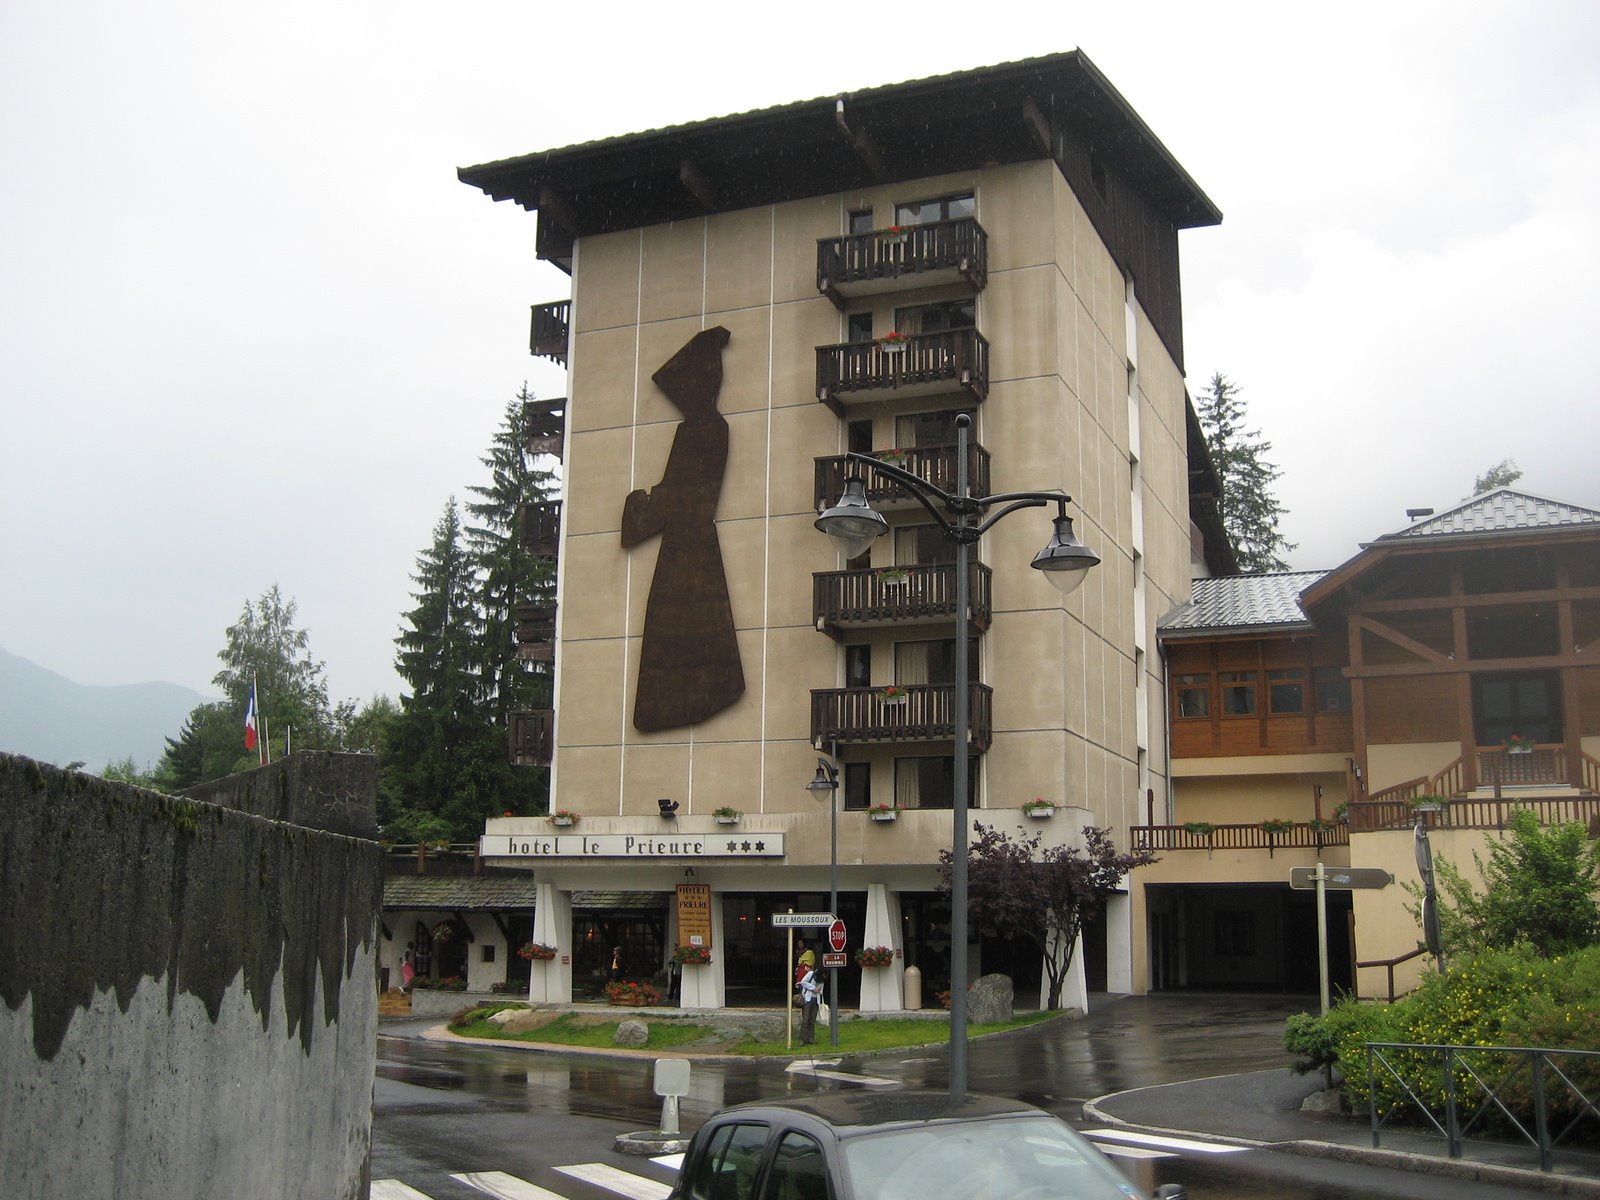 Hotel Prieuré